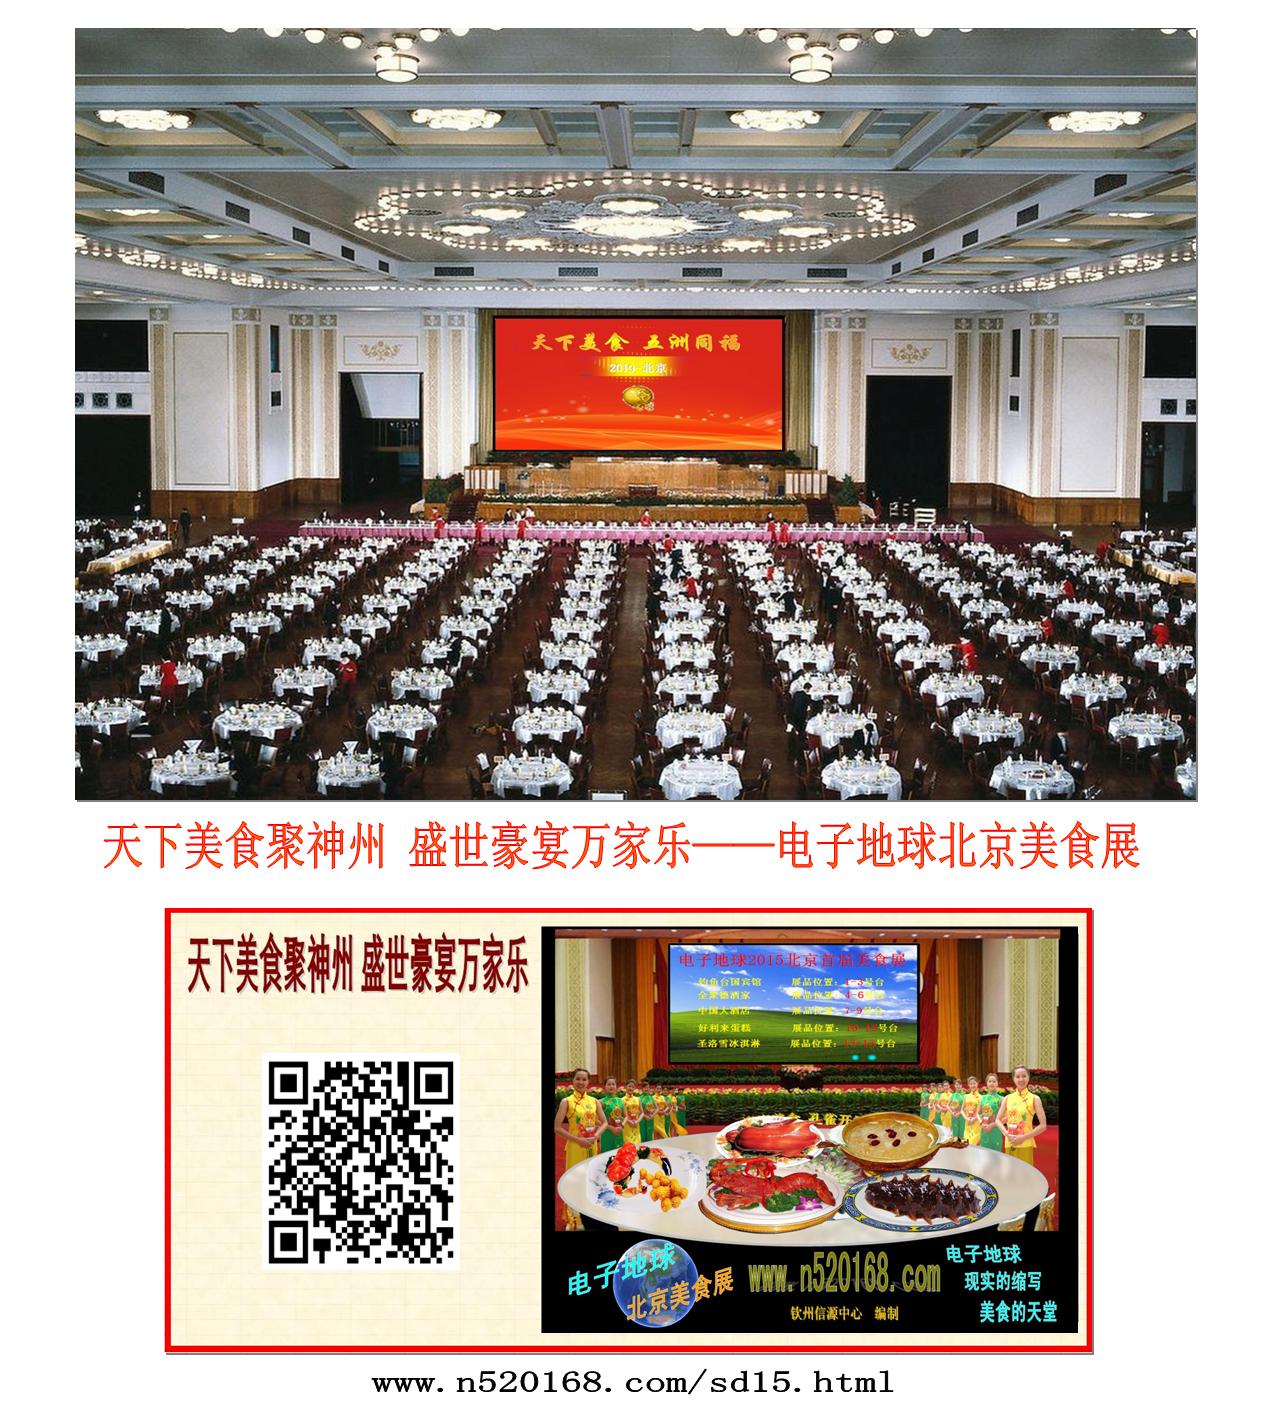 天下美食聚神州 盛世豪宴万家乐——电子地球北京美食展